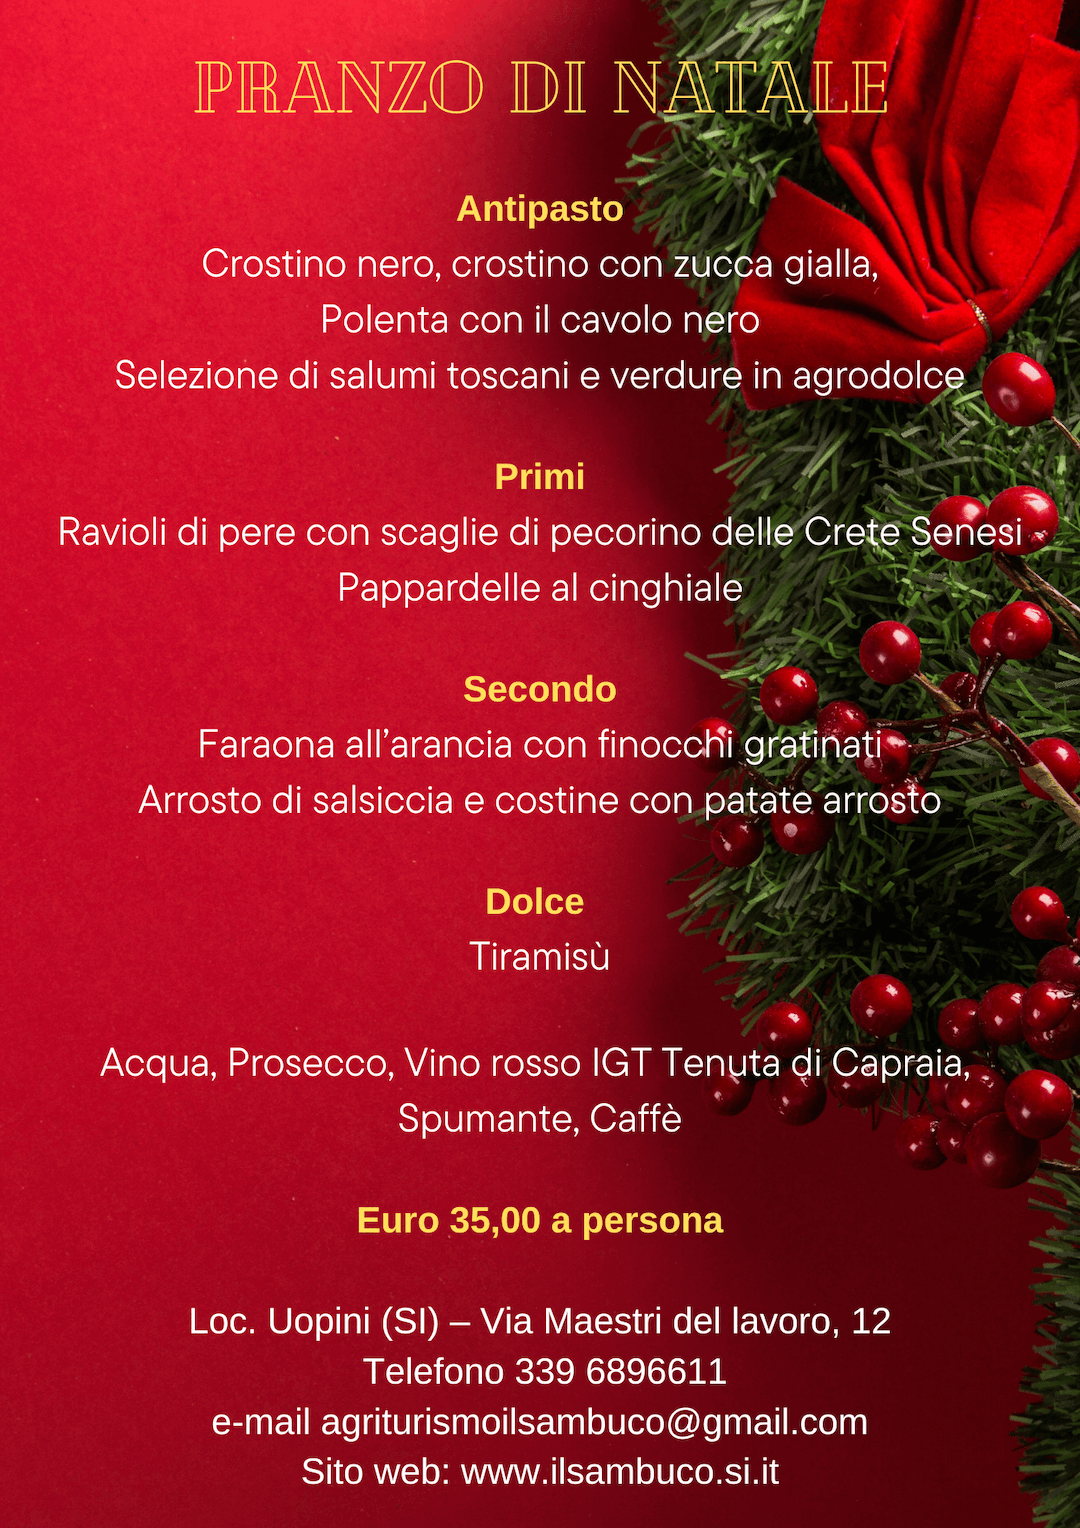 Pranzo - Natale - Agriturismo - il Sambuco - Siena